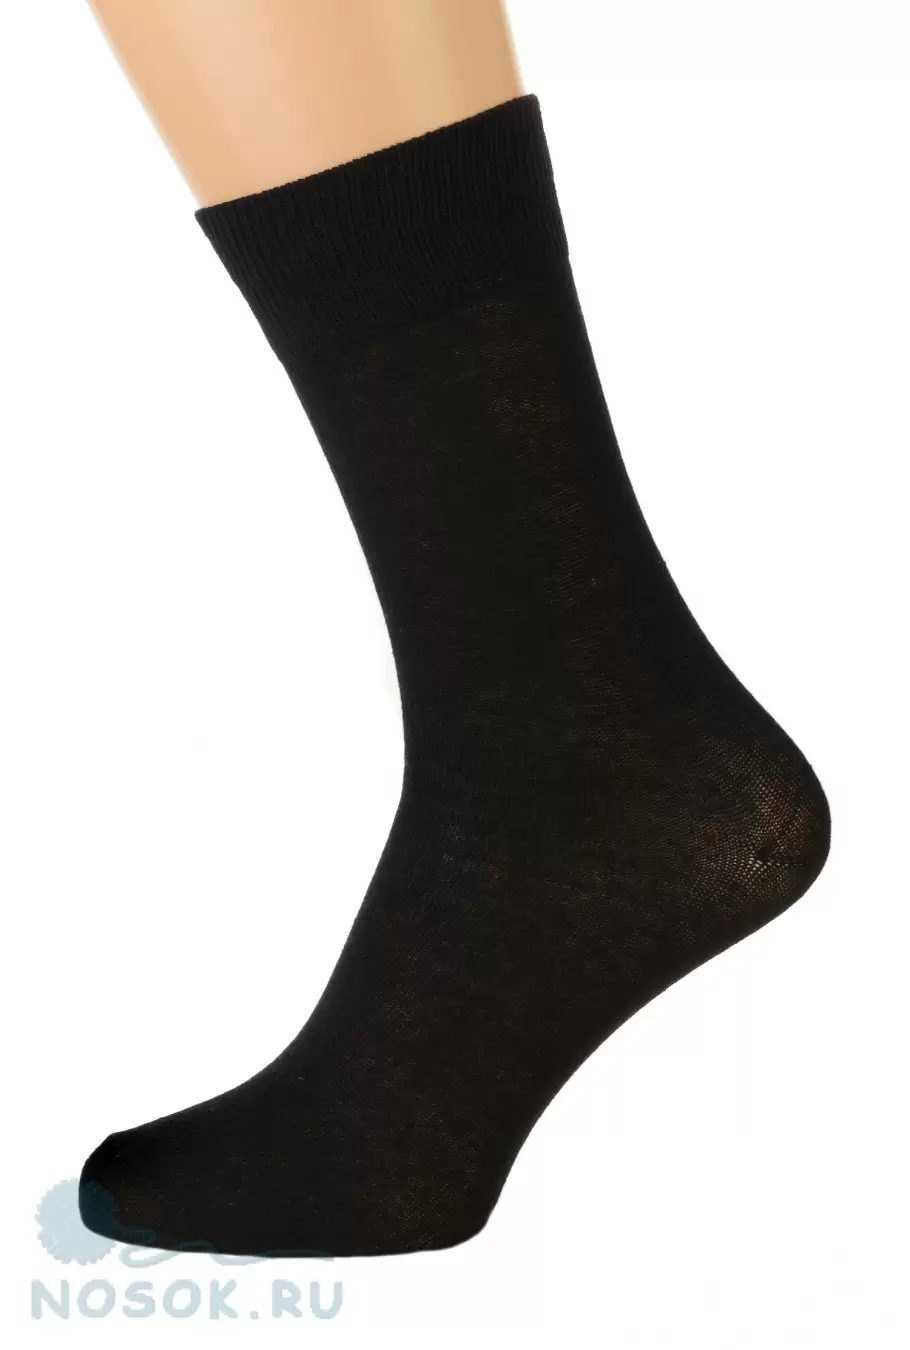 Стандарт-комплект носков - 30 пар (изображение 1)